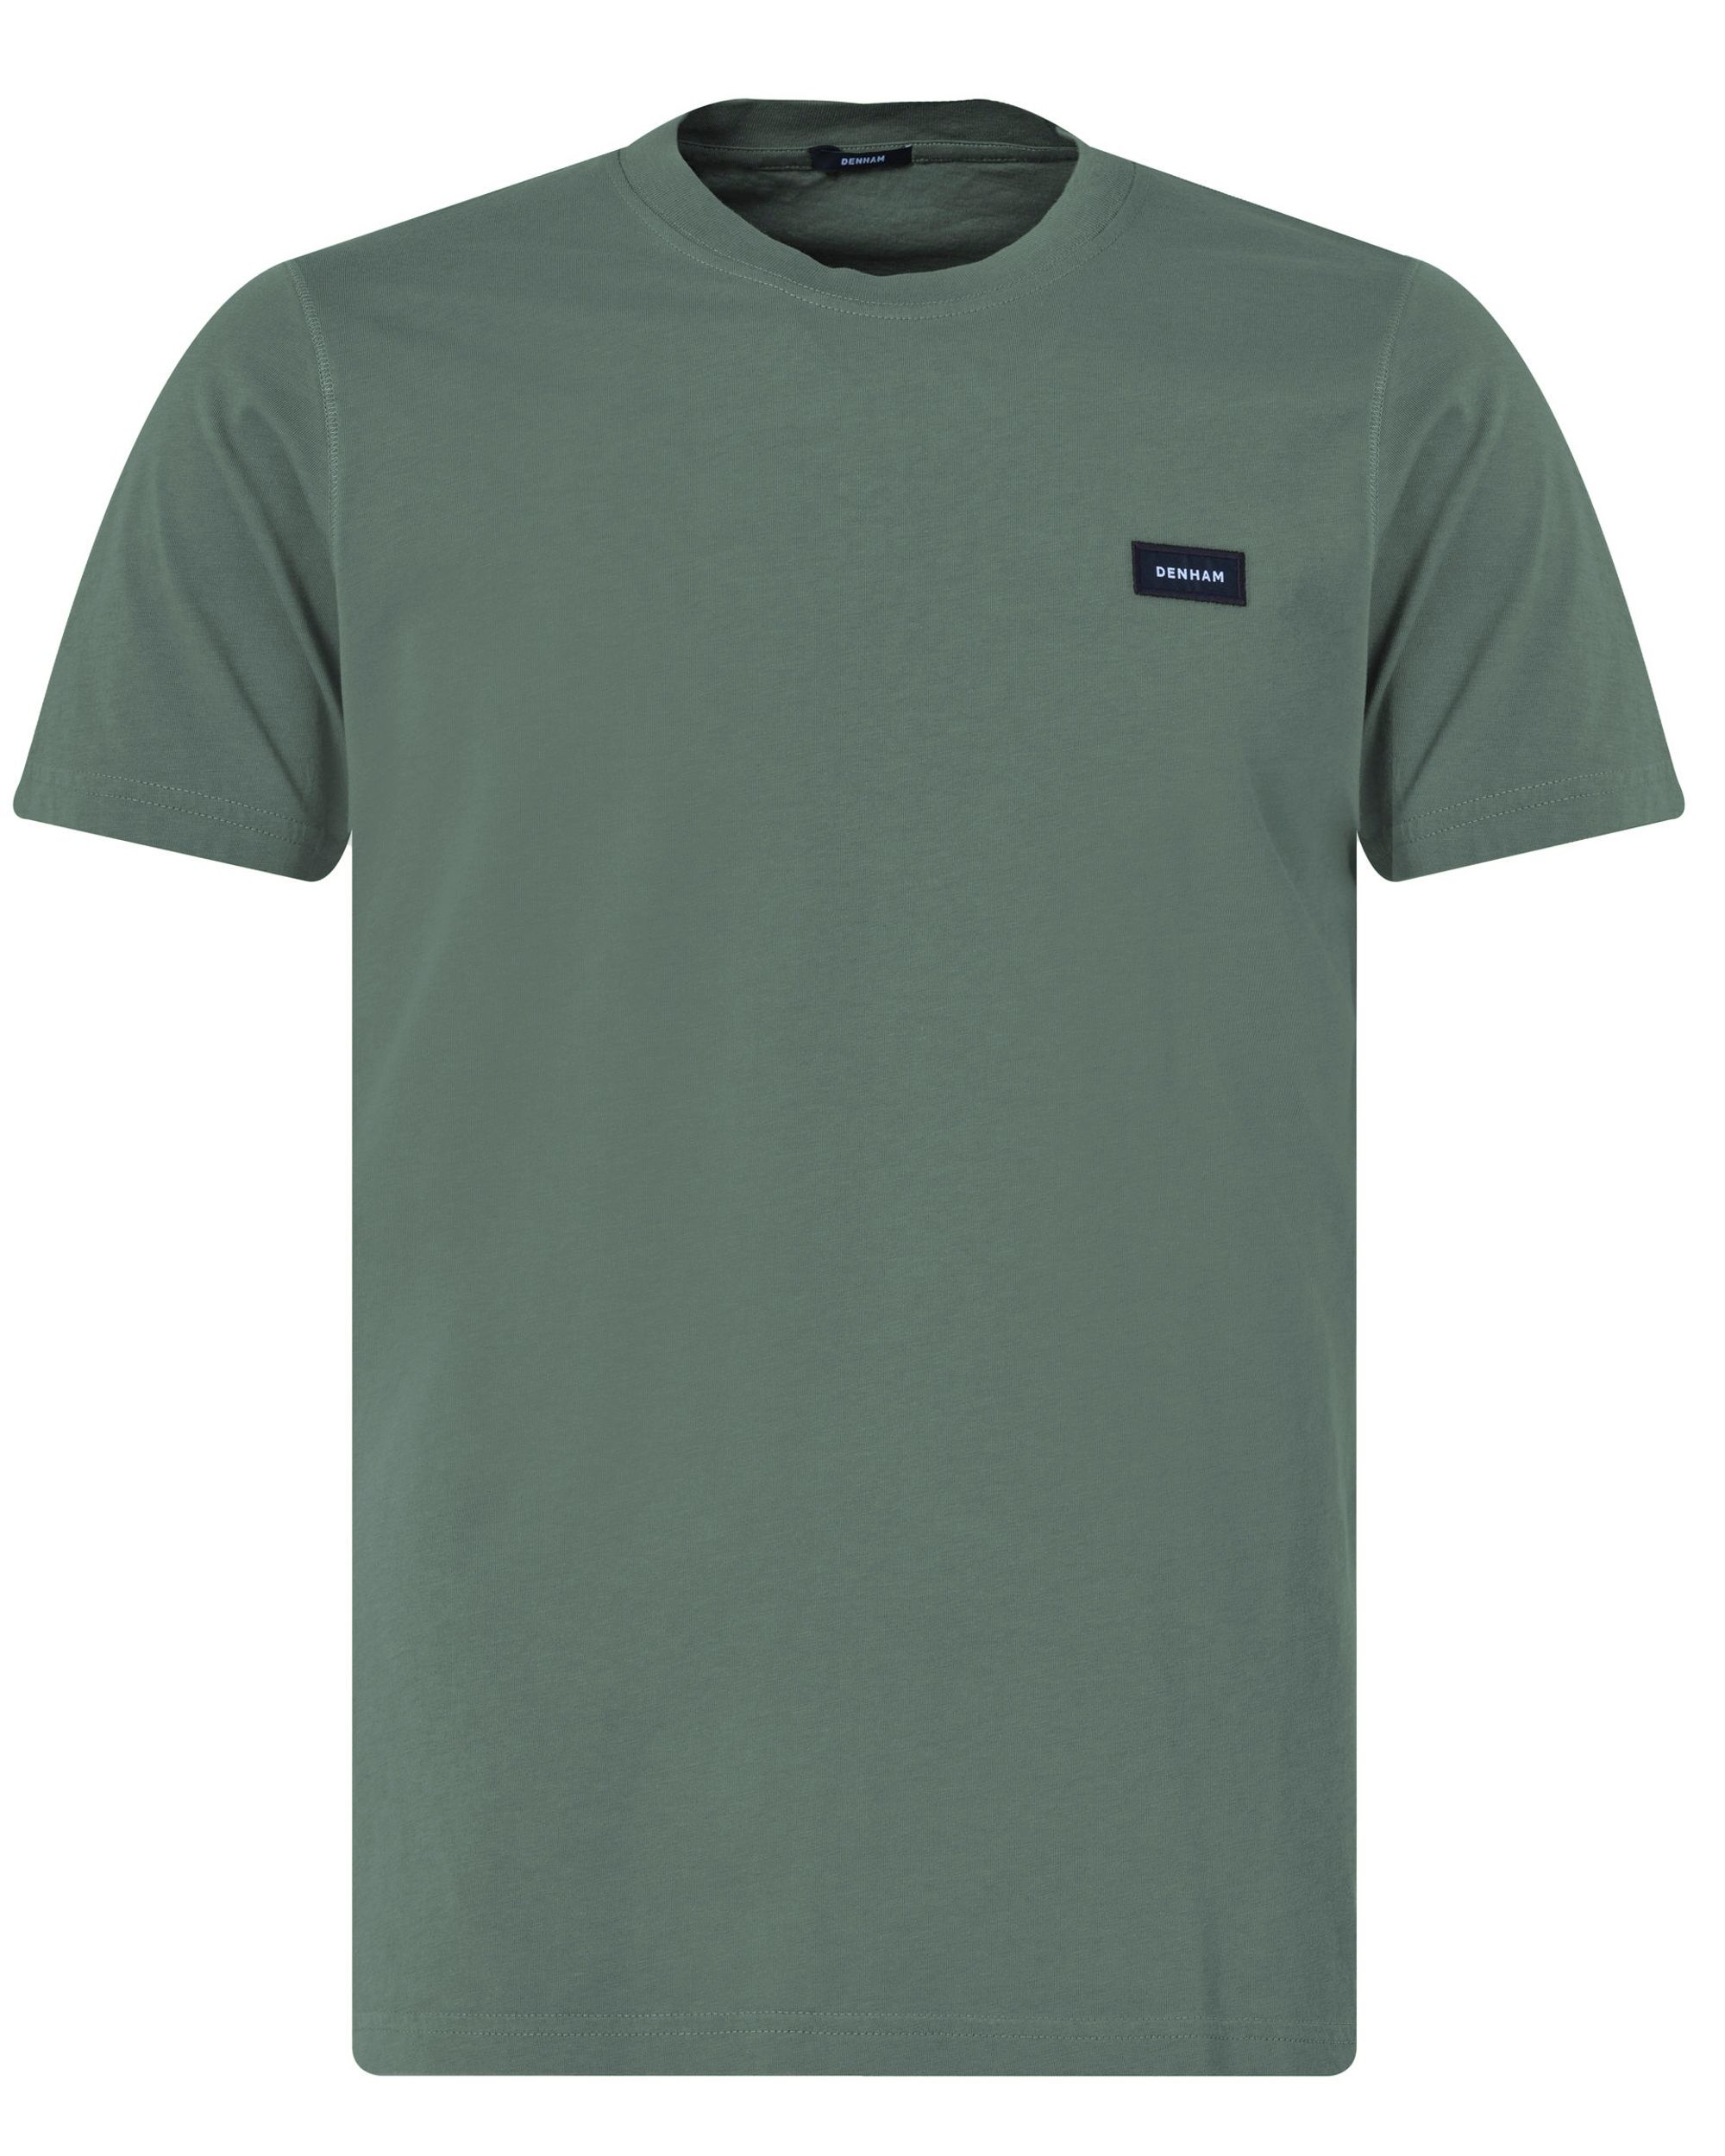 DENHAM Slim T-shirt KM Groen 094441-001-L